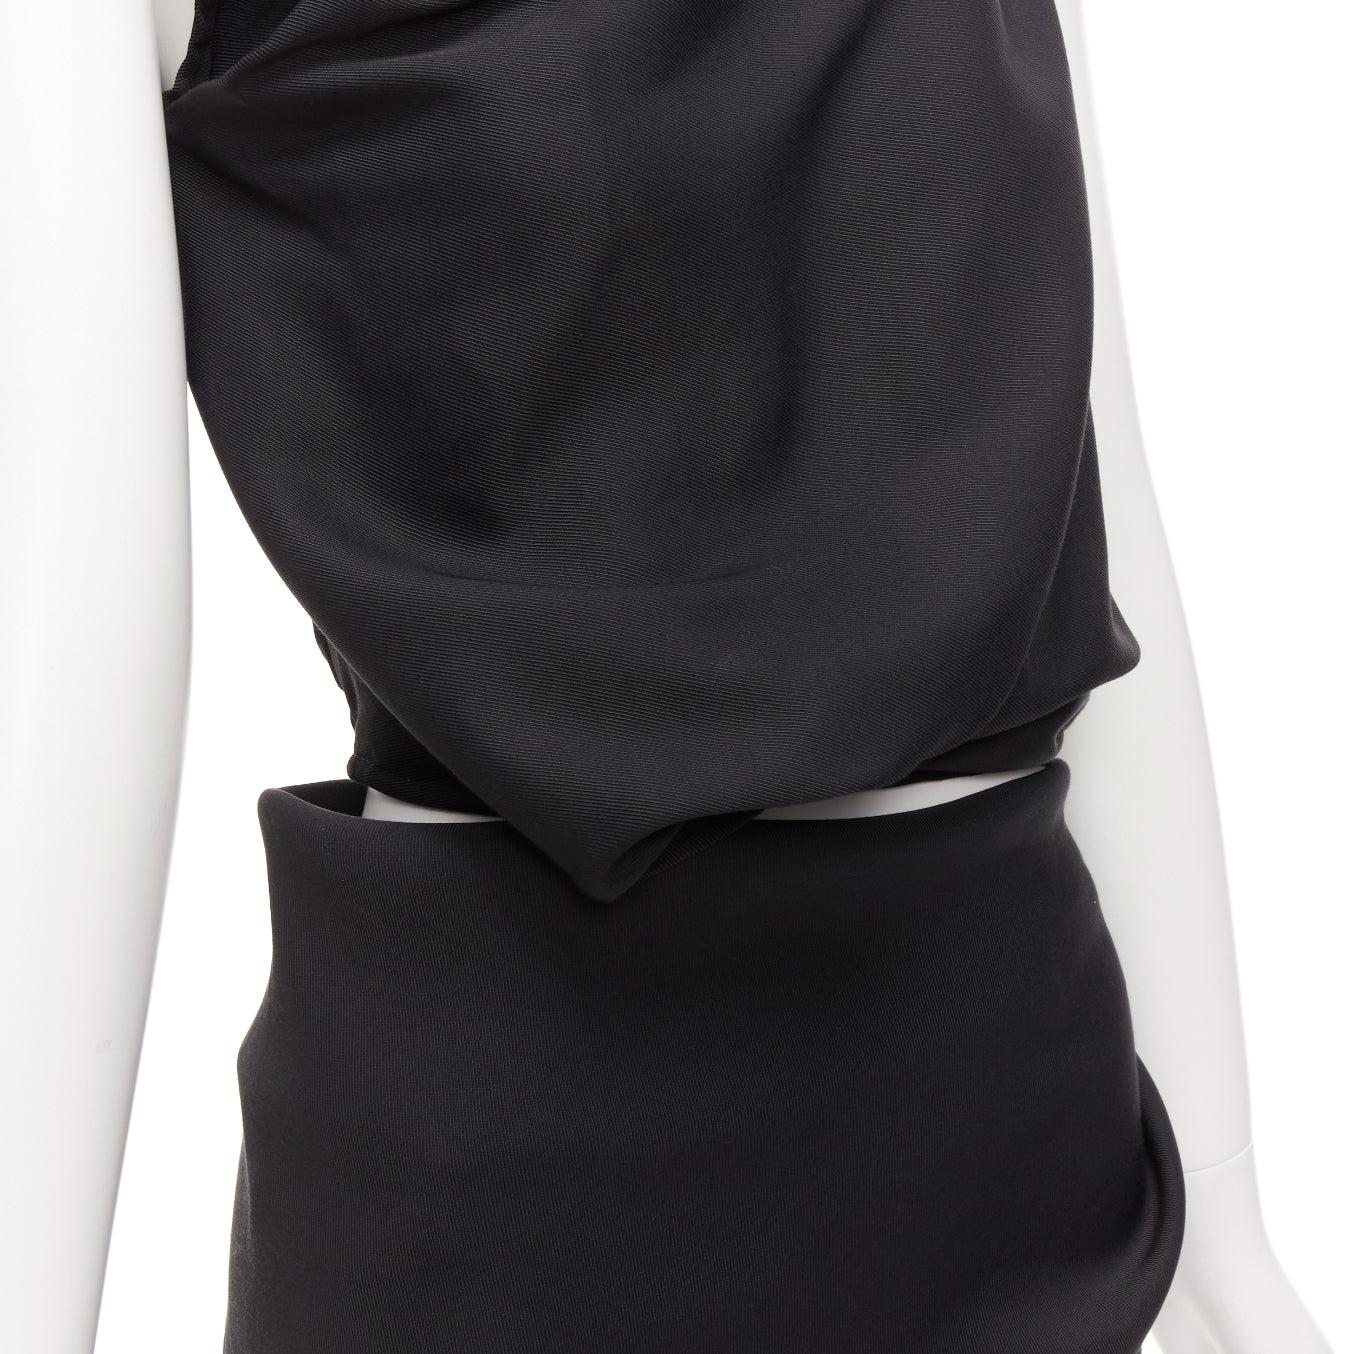 MATICEVSKI 2020 Energy Slash black drape front hi low cut out dress AUS8 S For Sale 3